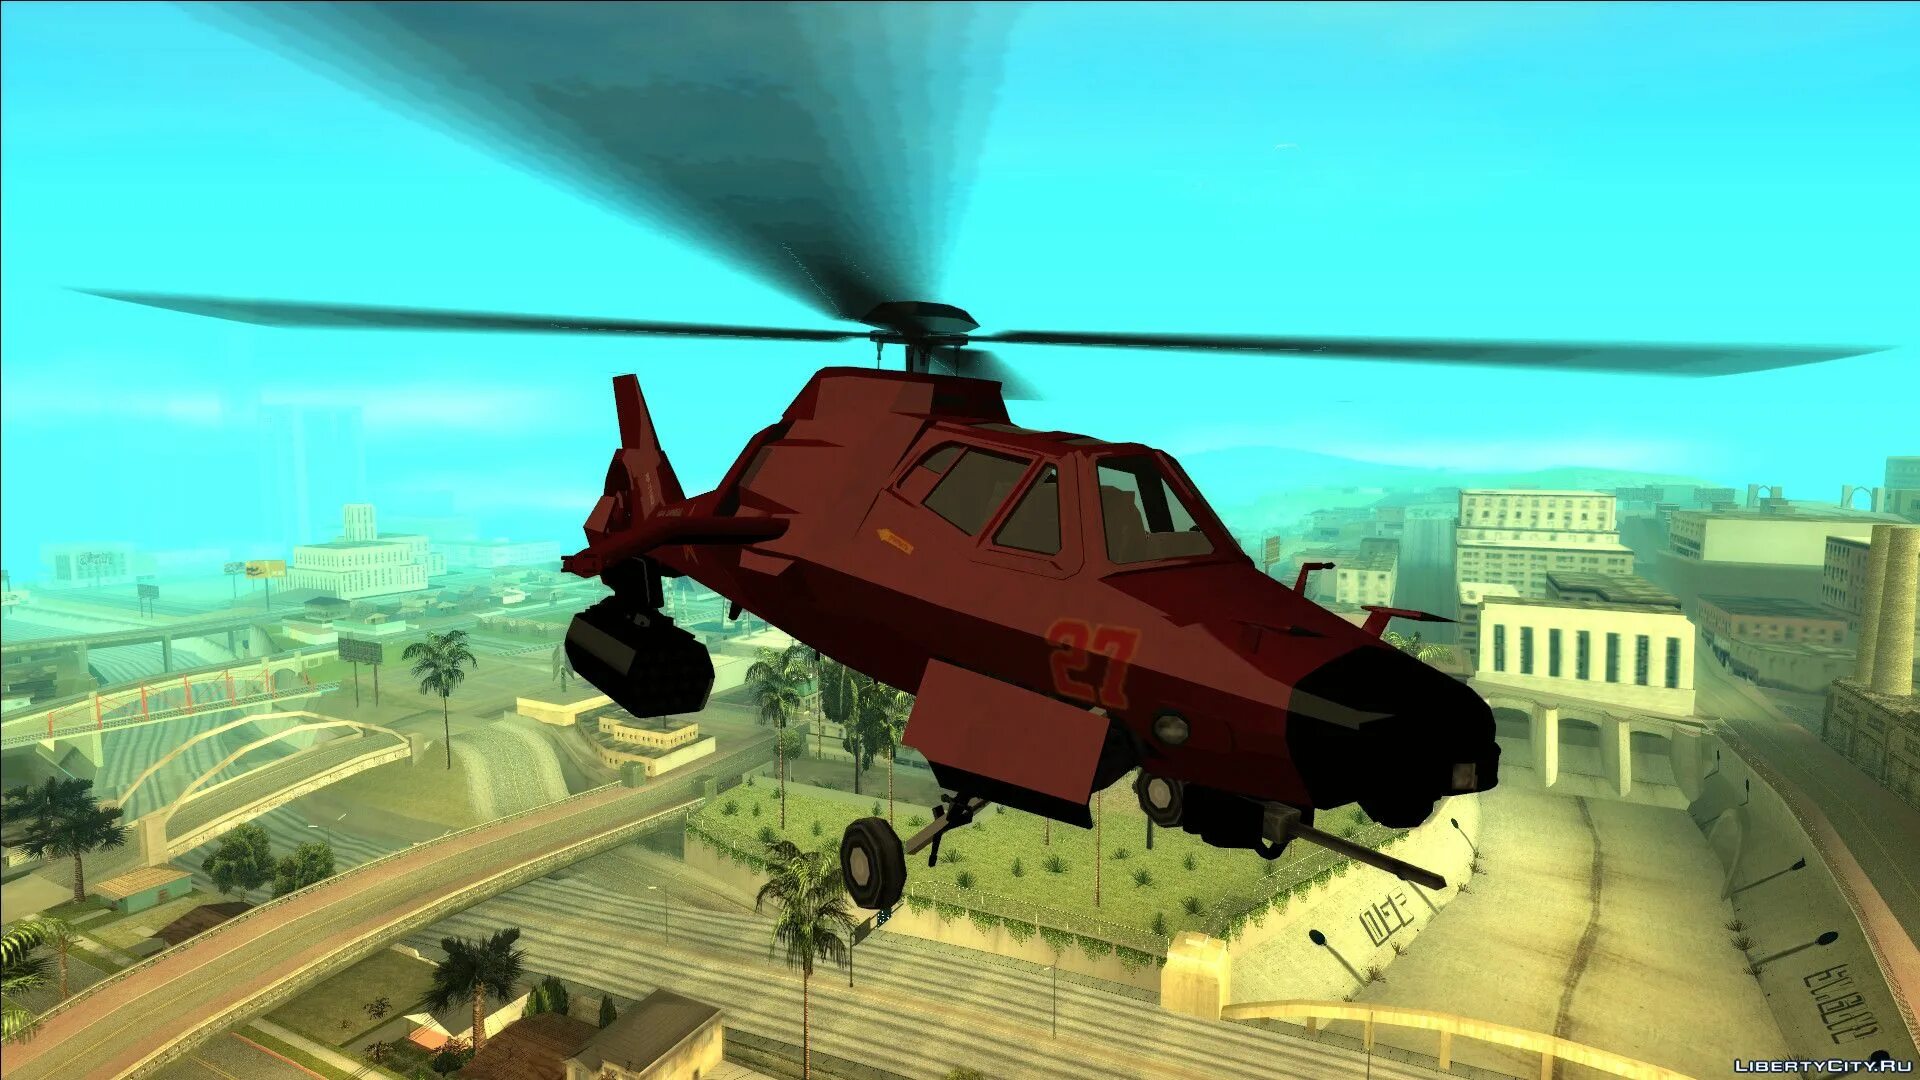 San andreas вертолет. GTA San Andreas вертолет. GTA 5 Akula вертолет. Хеликоптер ГТА Сан андреас.